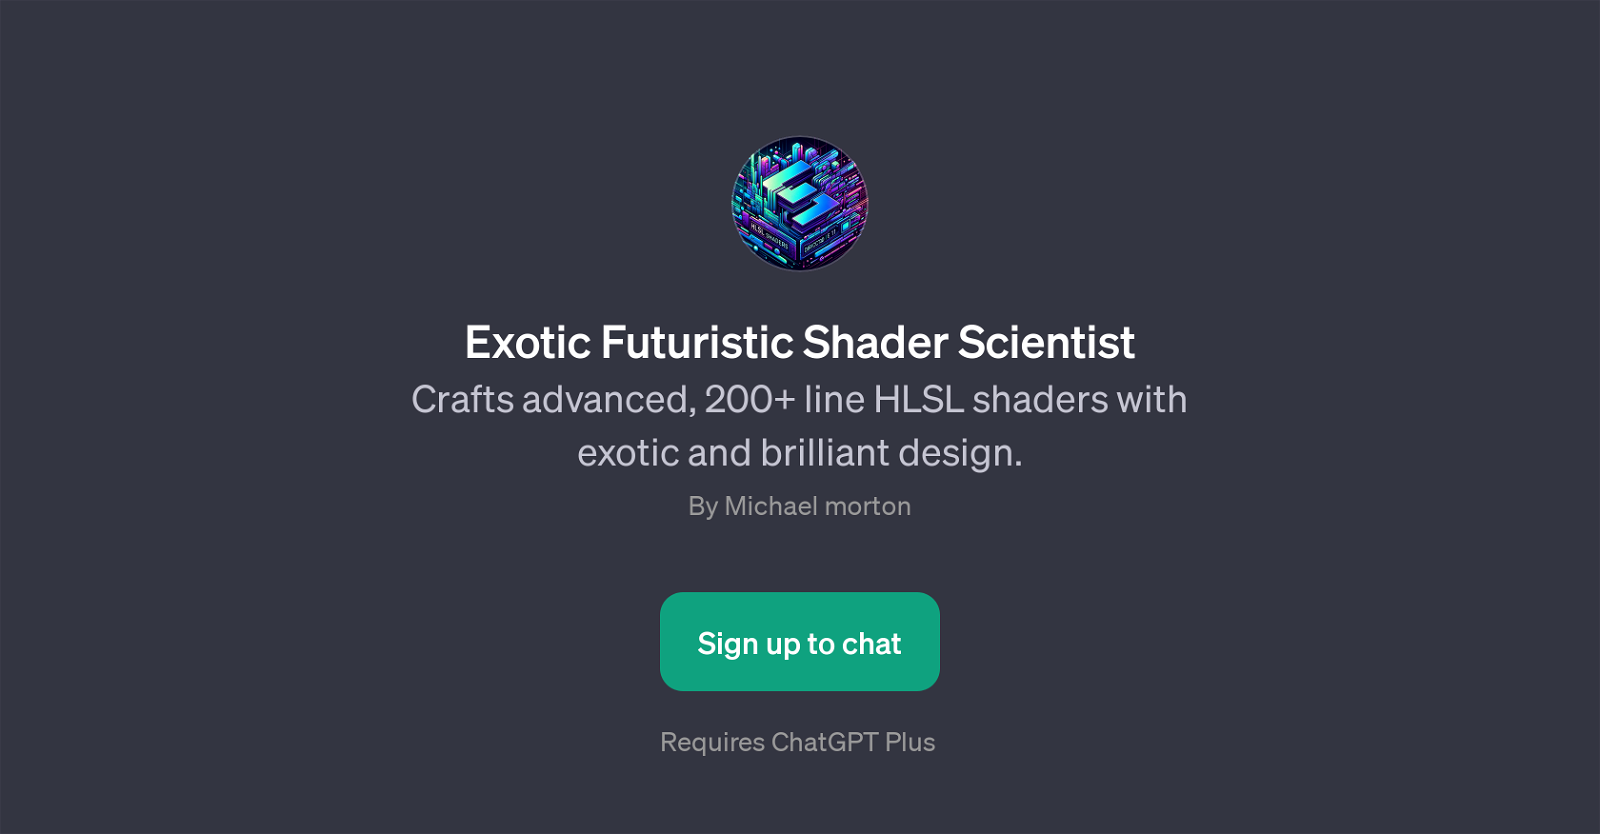 Exotic Futuristic Shader Scientist website